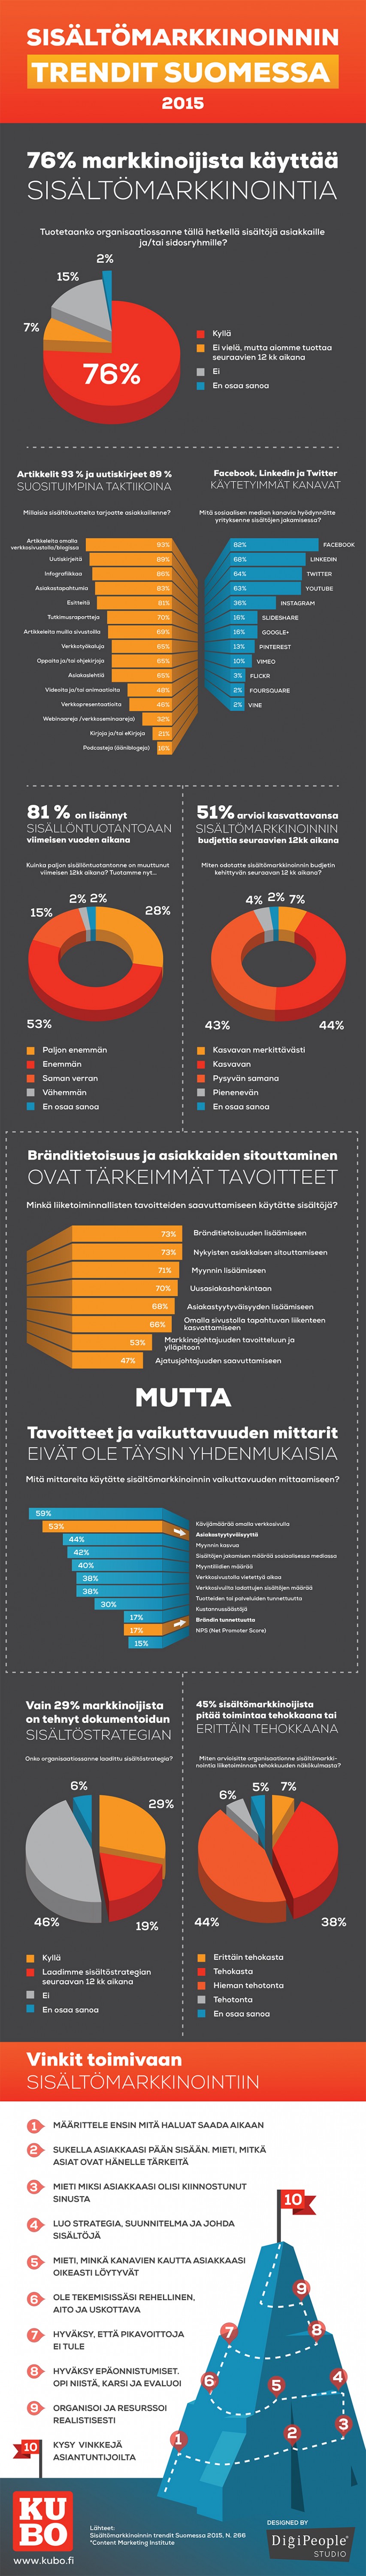 Sisaltomarkkinoinnin trendit Suomessa 2015 infograafi